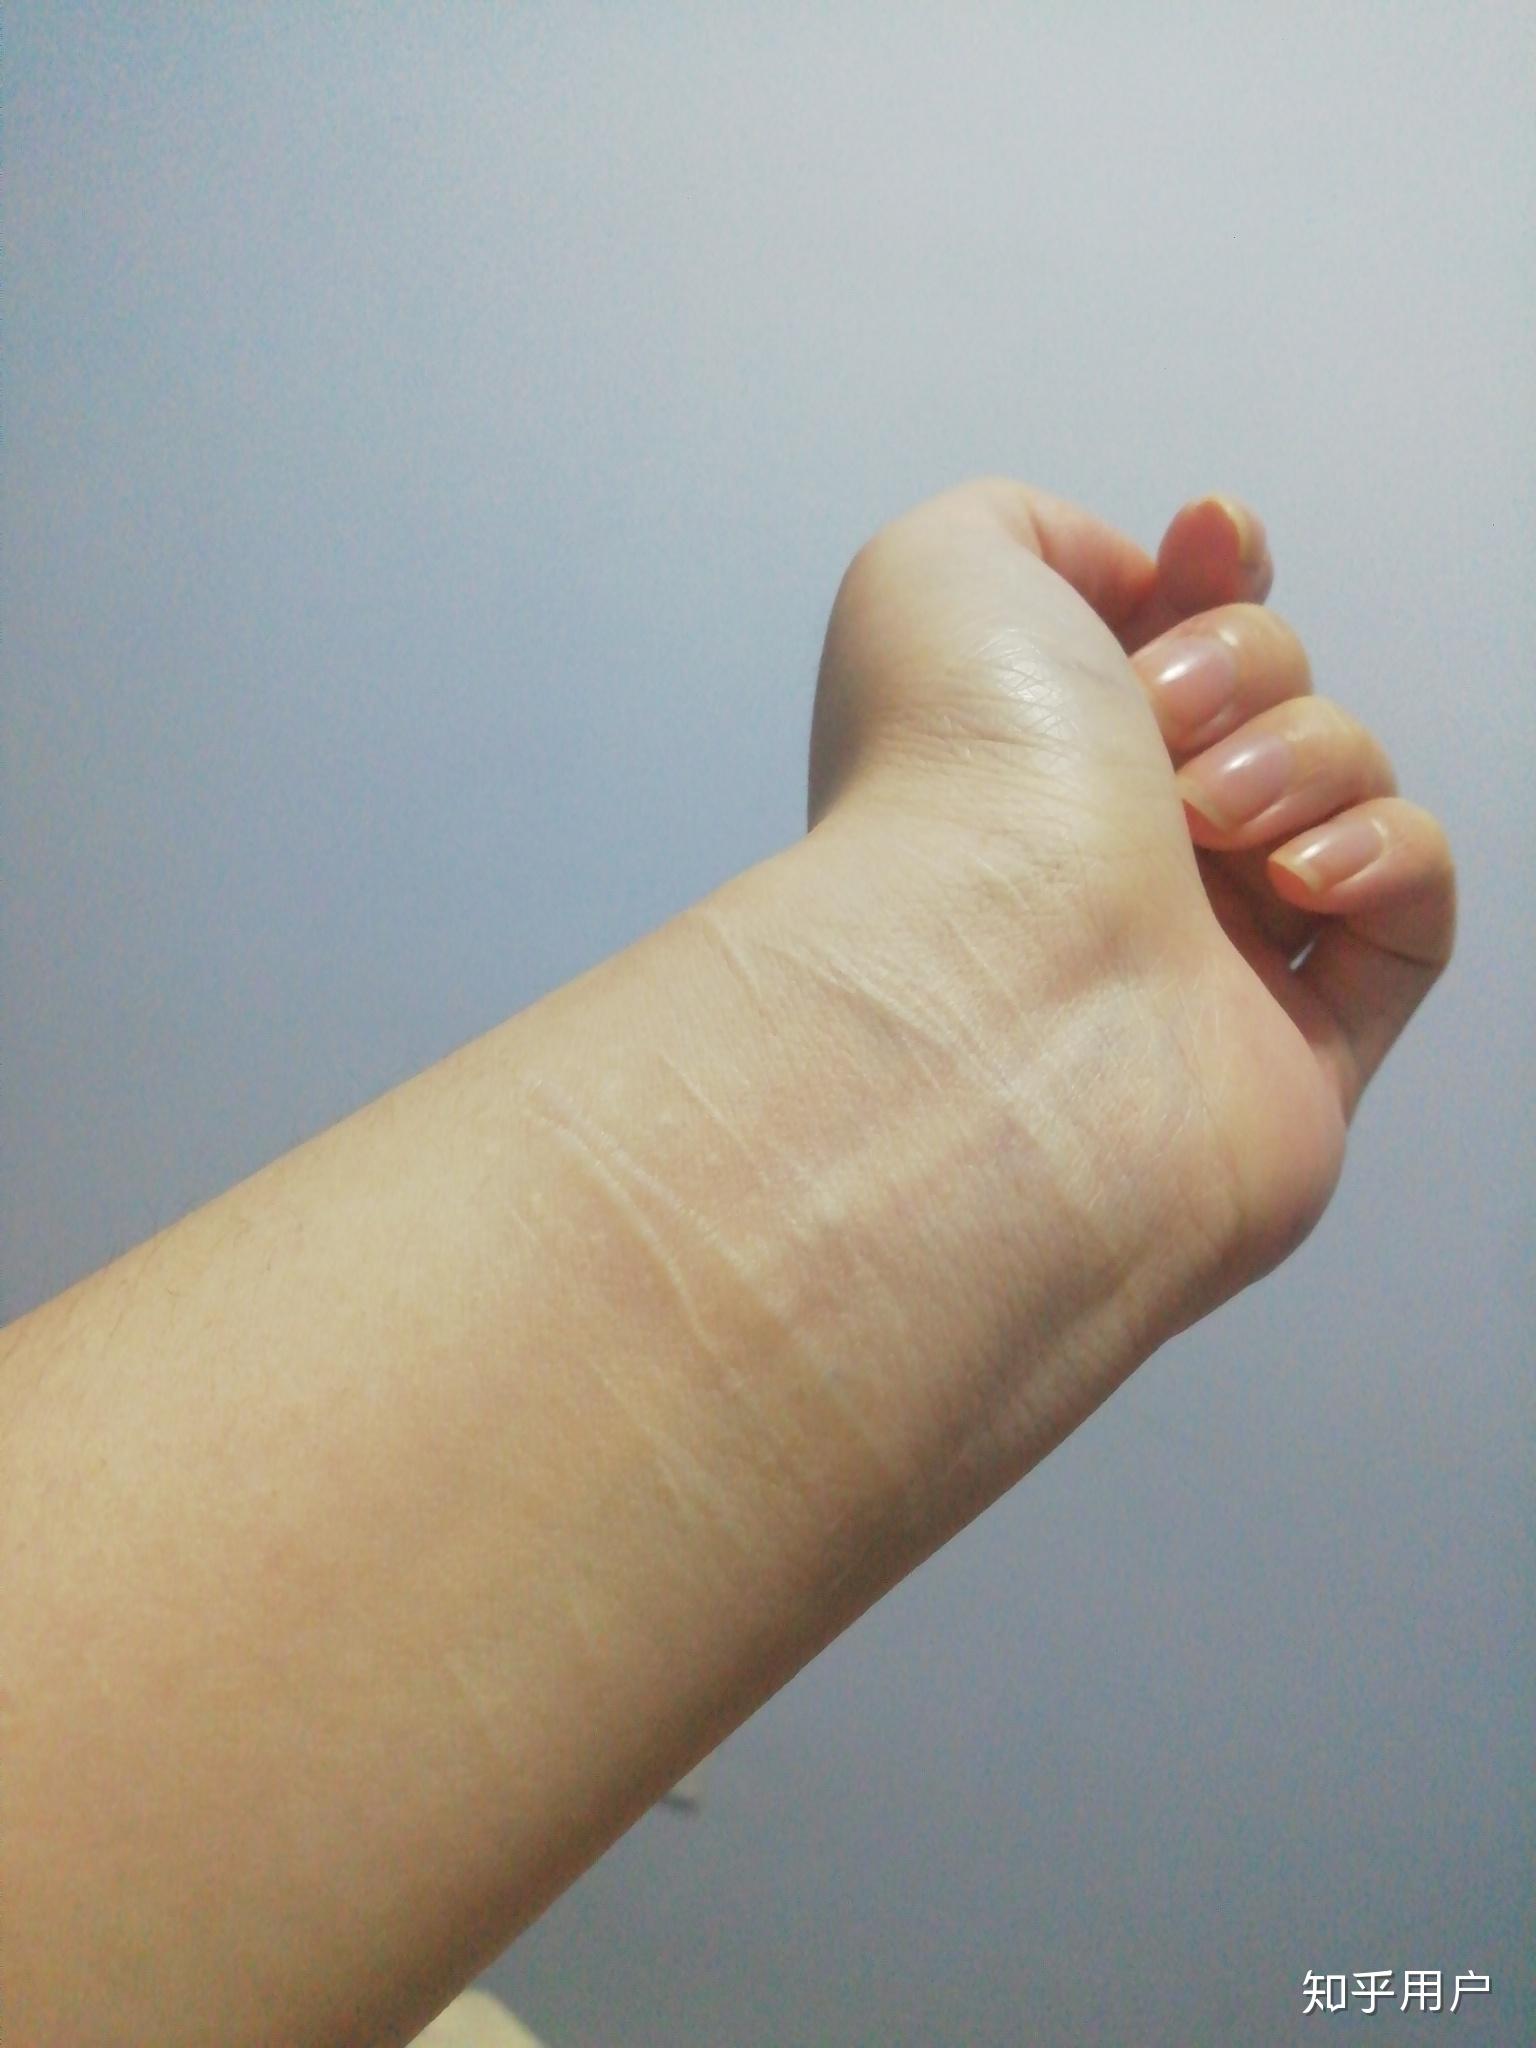 对于一个割腕过的人,未来如何向别人解释这道疤的由来? 